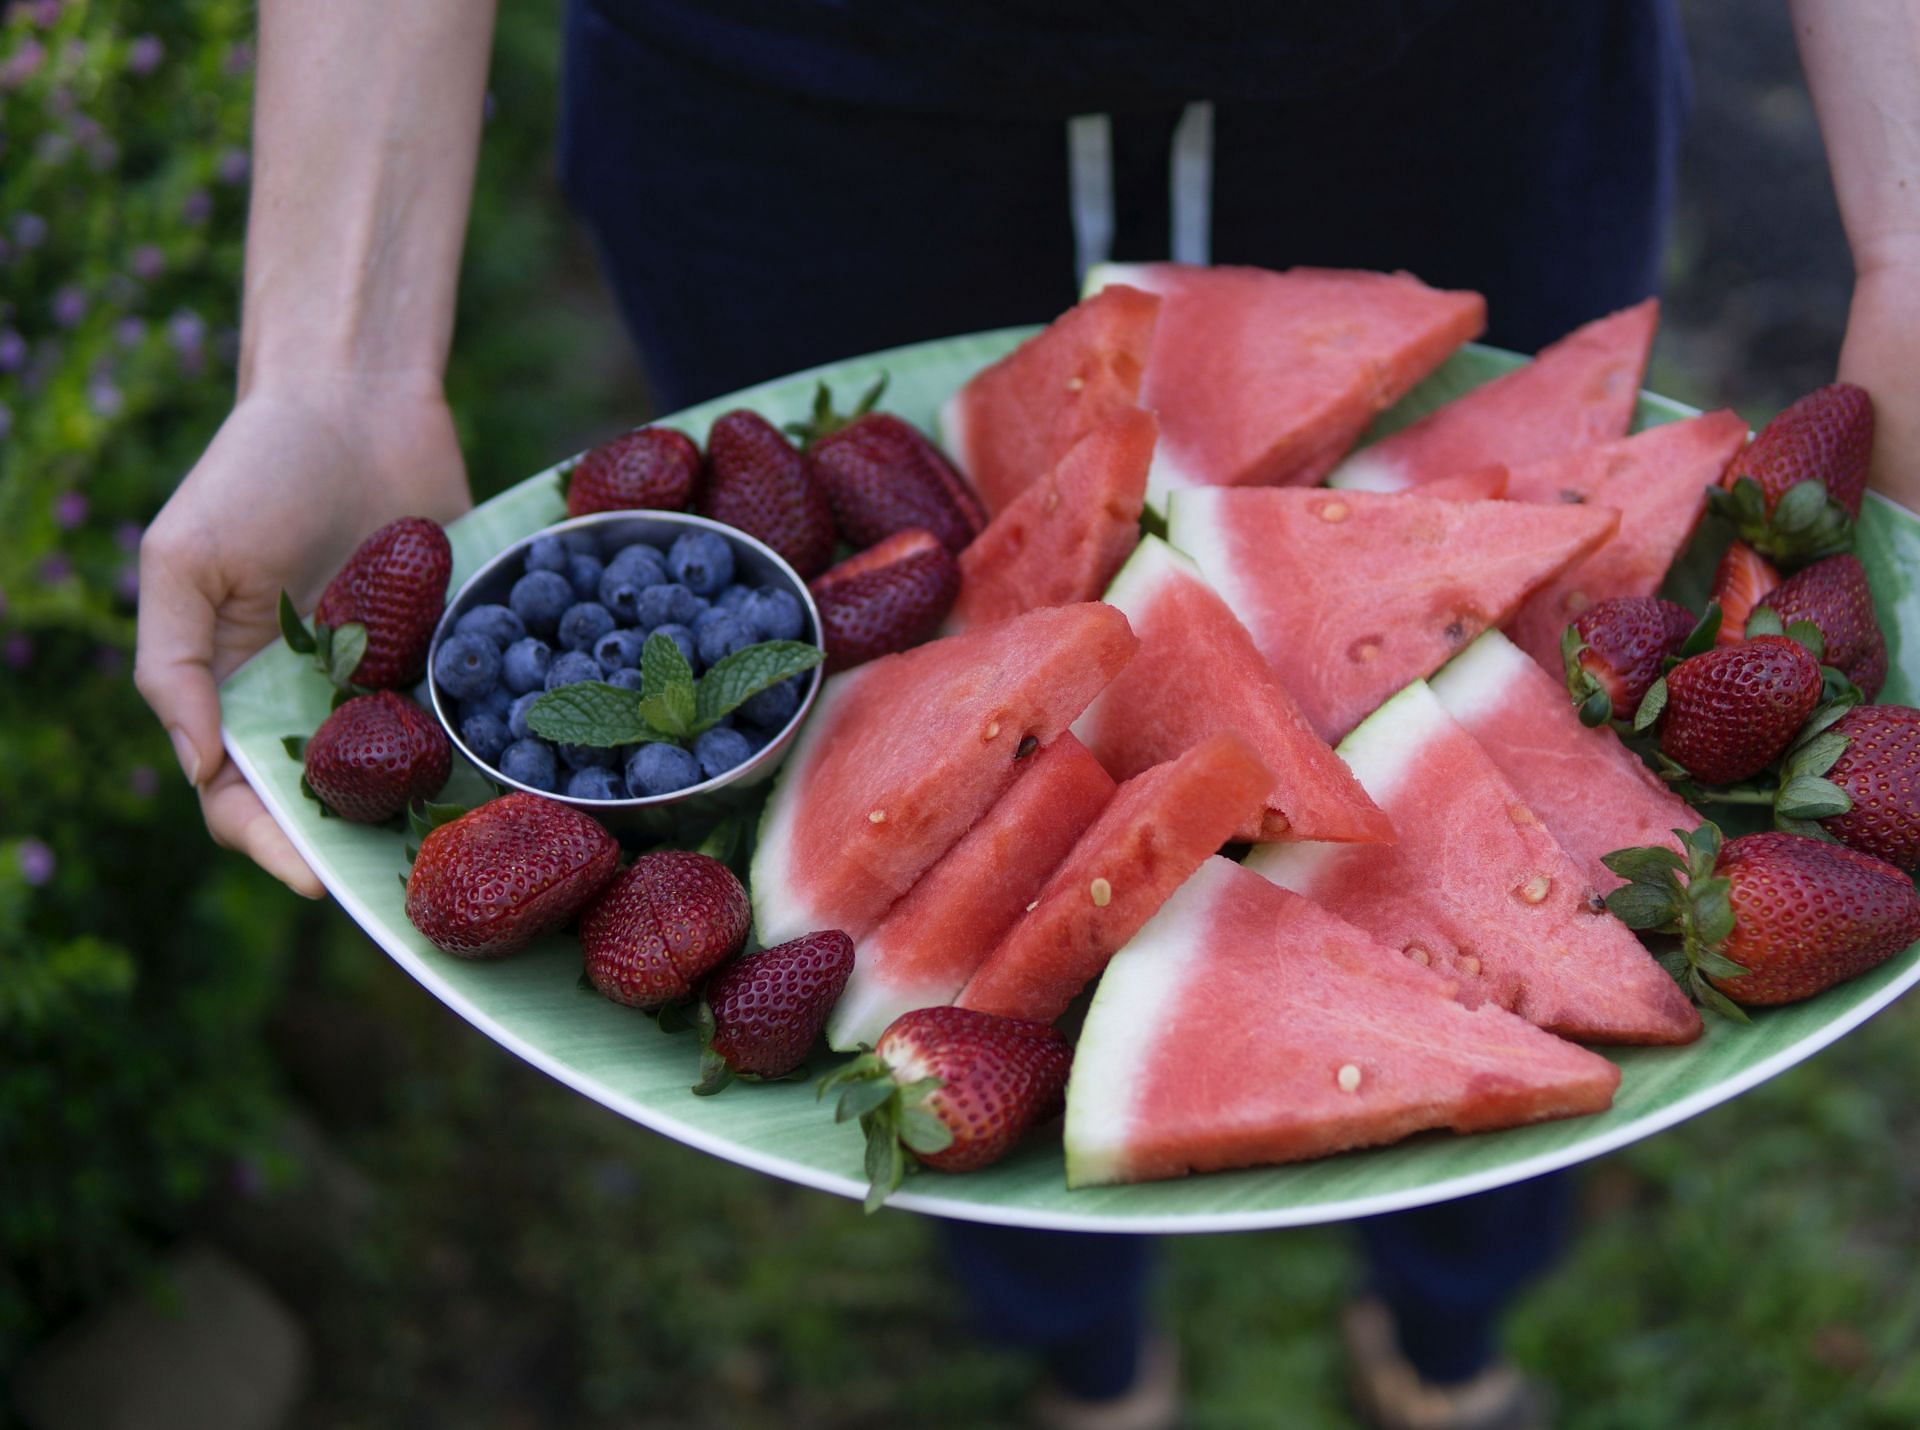 Watermelon nutrition facts (Image via Pexels/Elle Hugh)